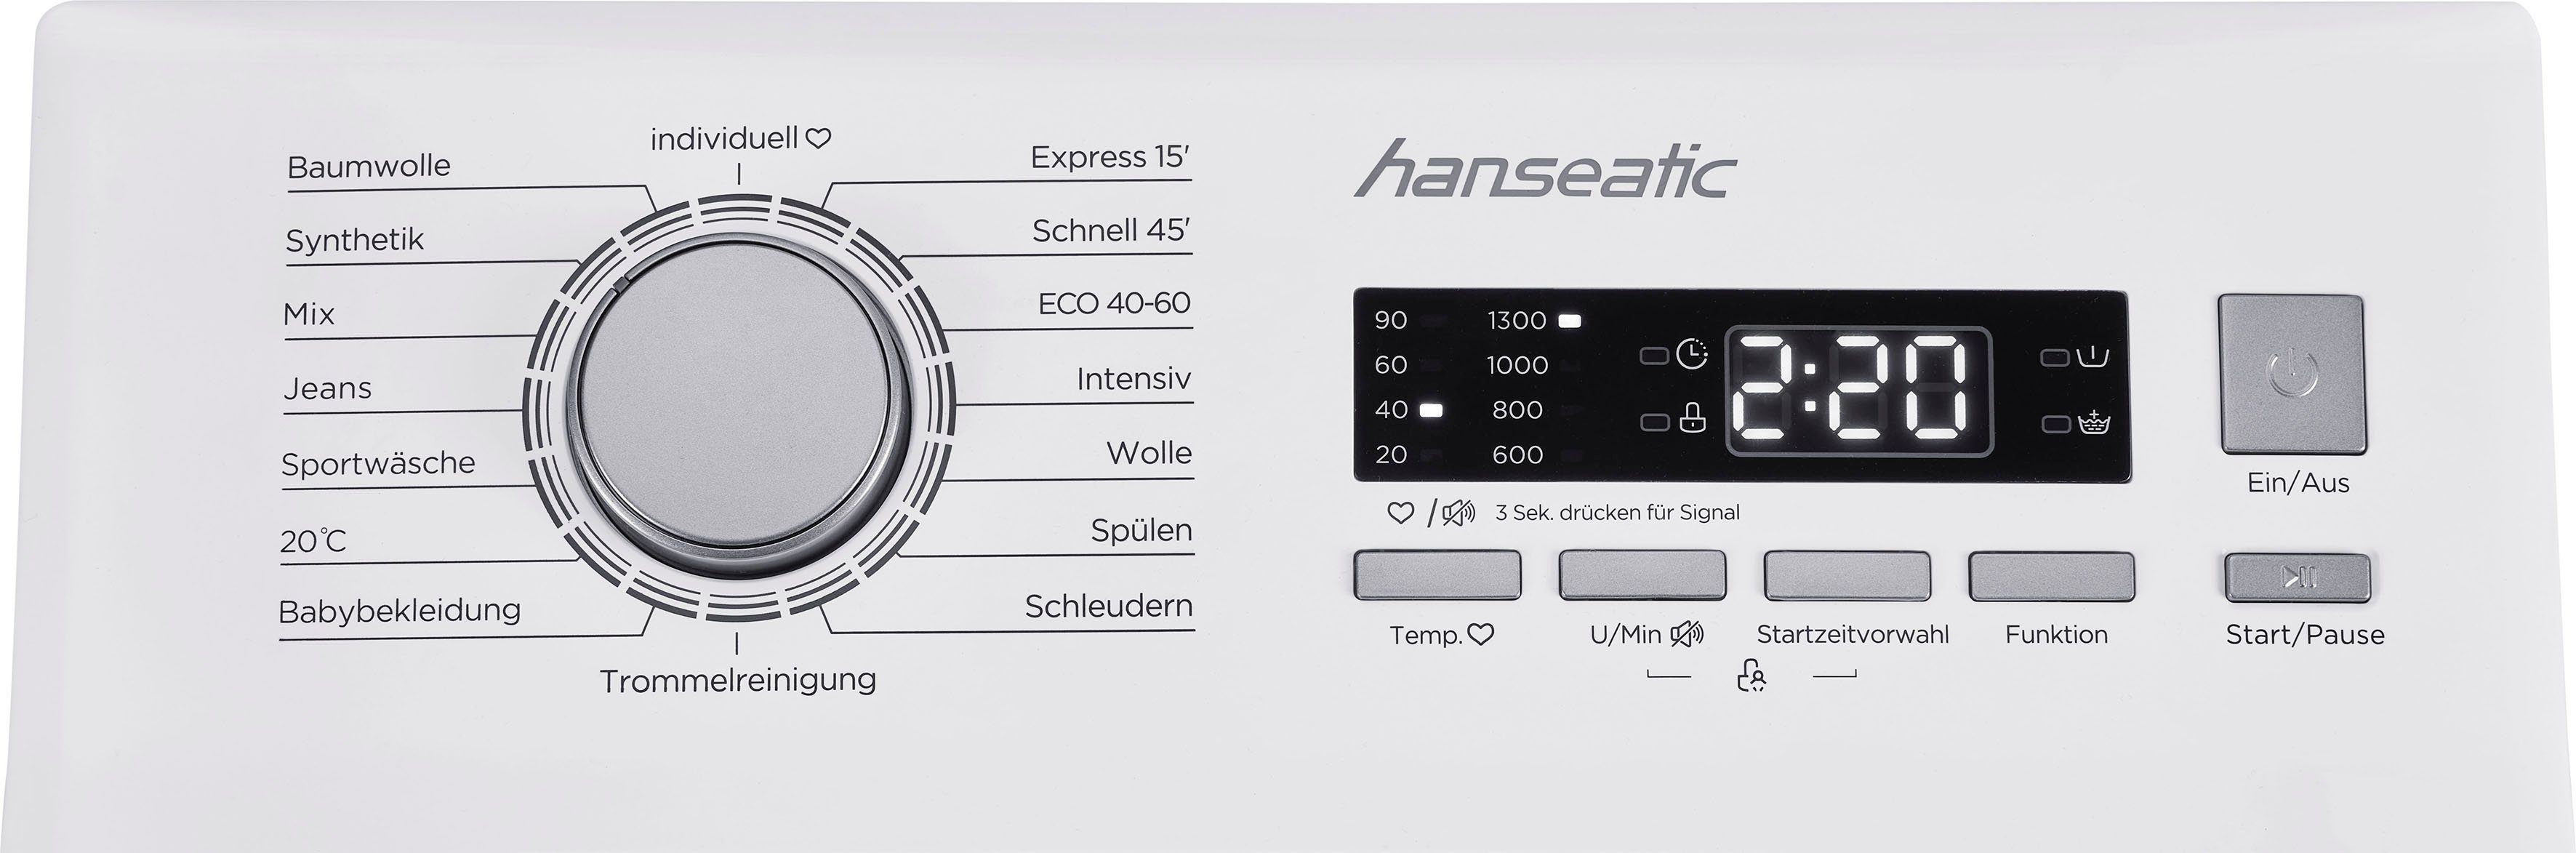 HTW8013C, Waschmaschine kg, Überlaufschutzsystem U/min, 8 1300 Toplader Mengenautomatik, Hanseatic